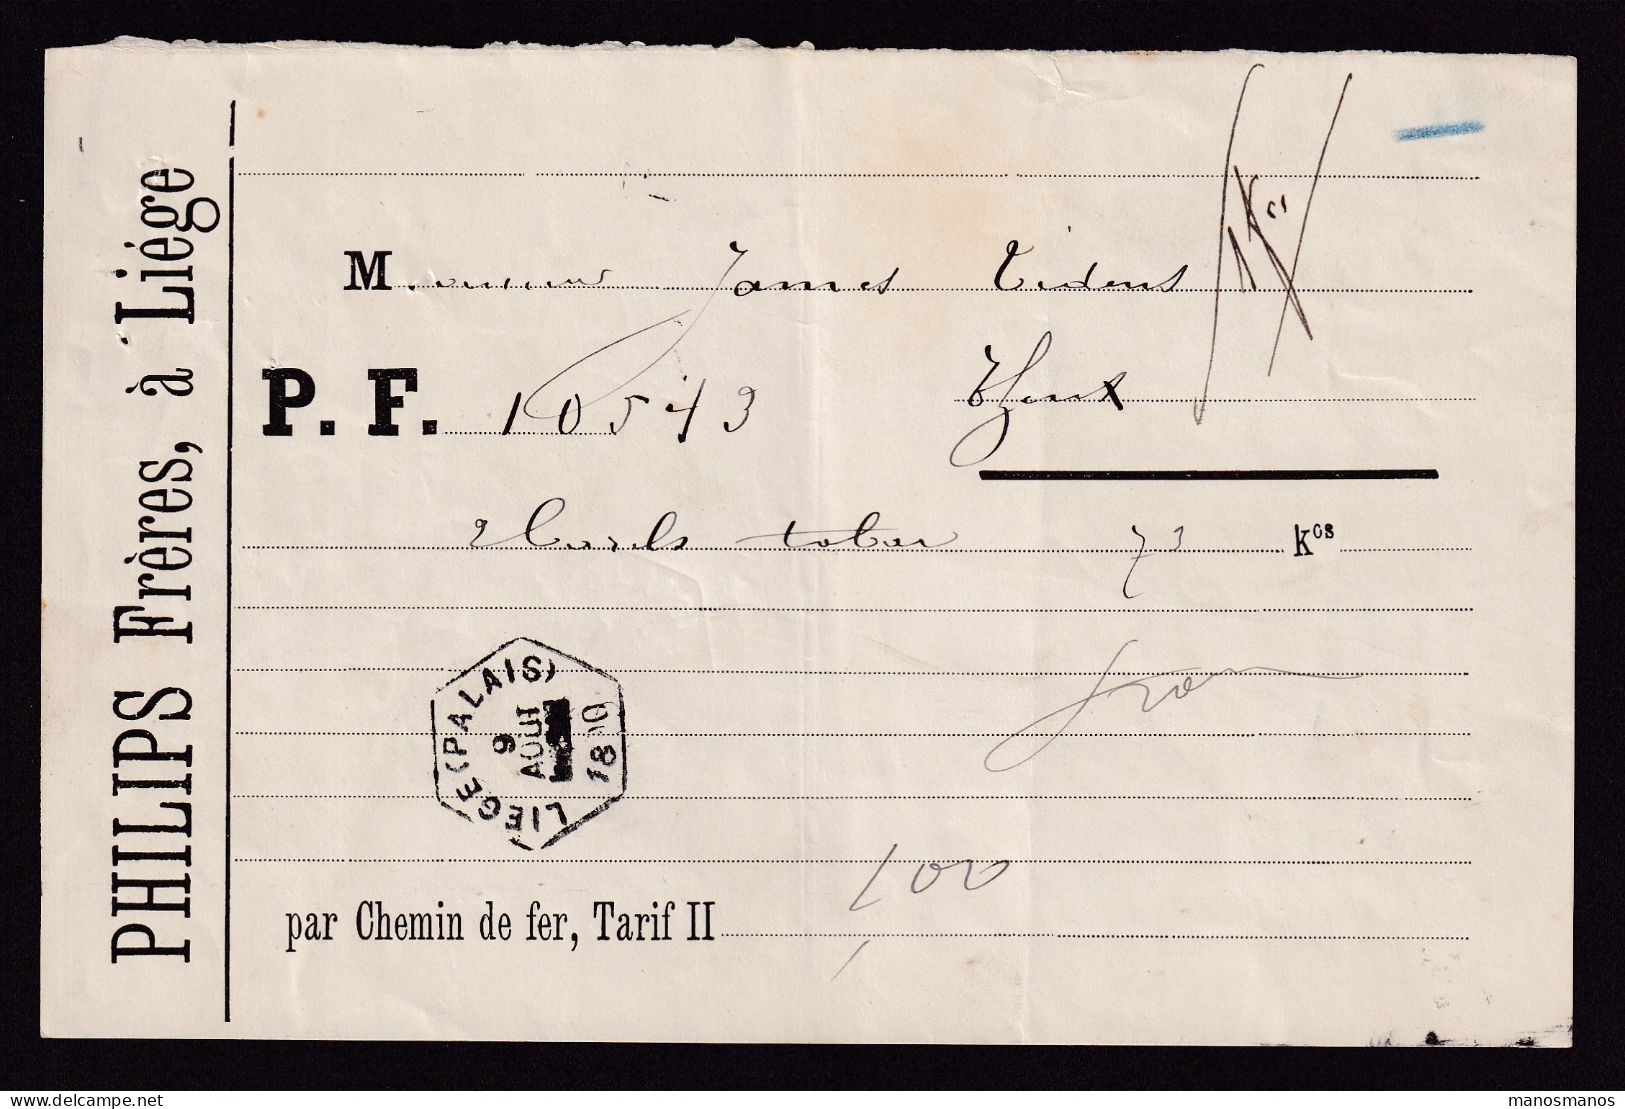 DDFF 820 -- BELGIUM - Lettre De Voiture Hexagonal Gare De LIEGE PALAIS 1890 à THEUX / Entete Philips Frères (TABAC) - Tabacco